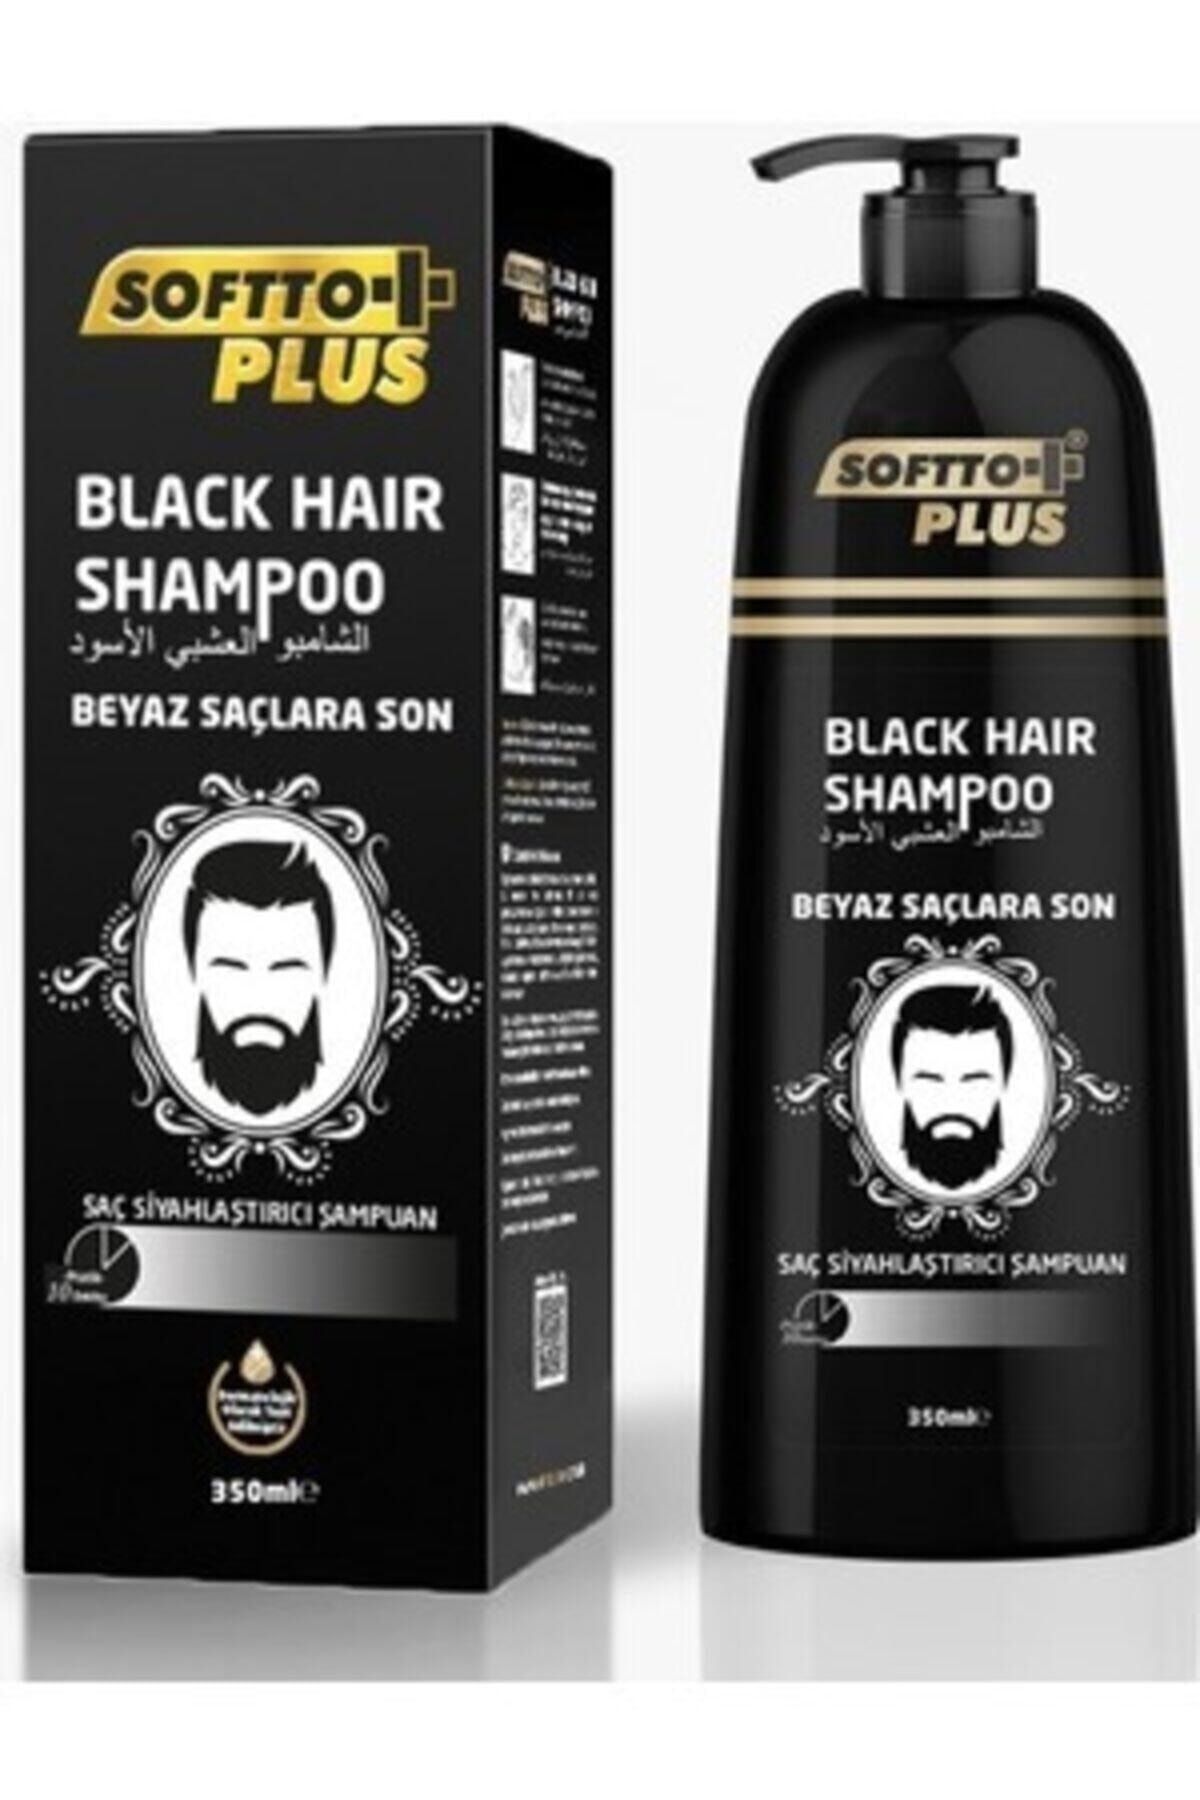 Softto Plus Sampoo Saç Siyahlaştırıcı Sampuan 350ml